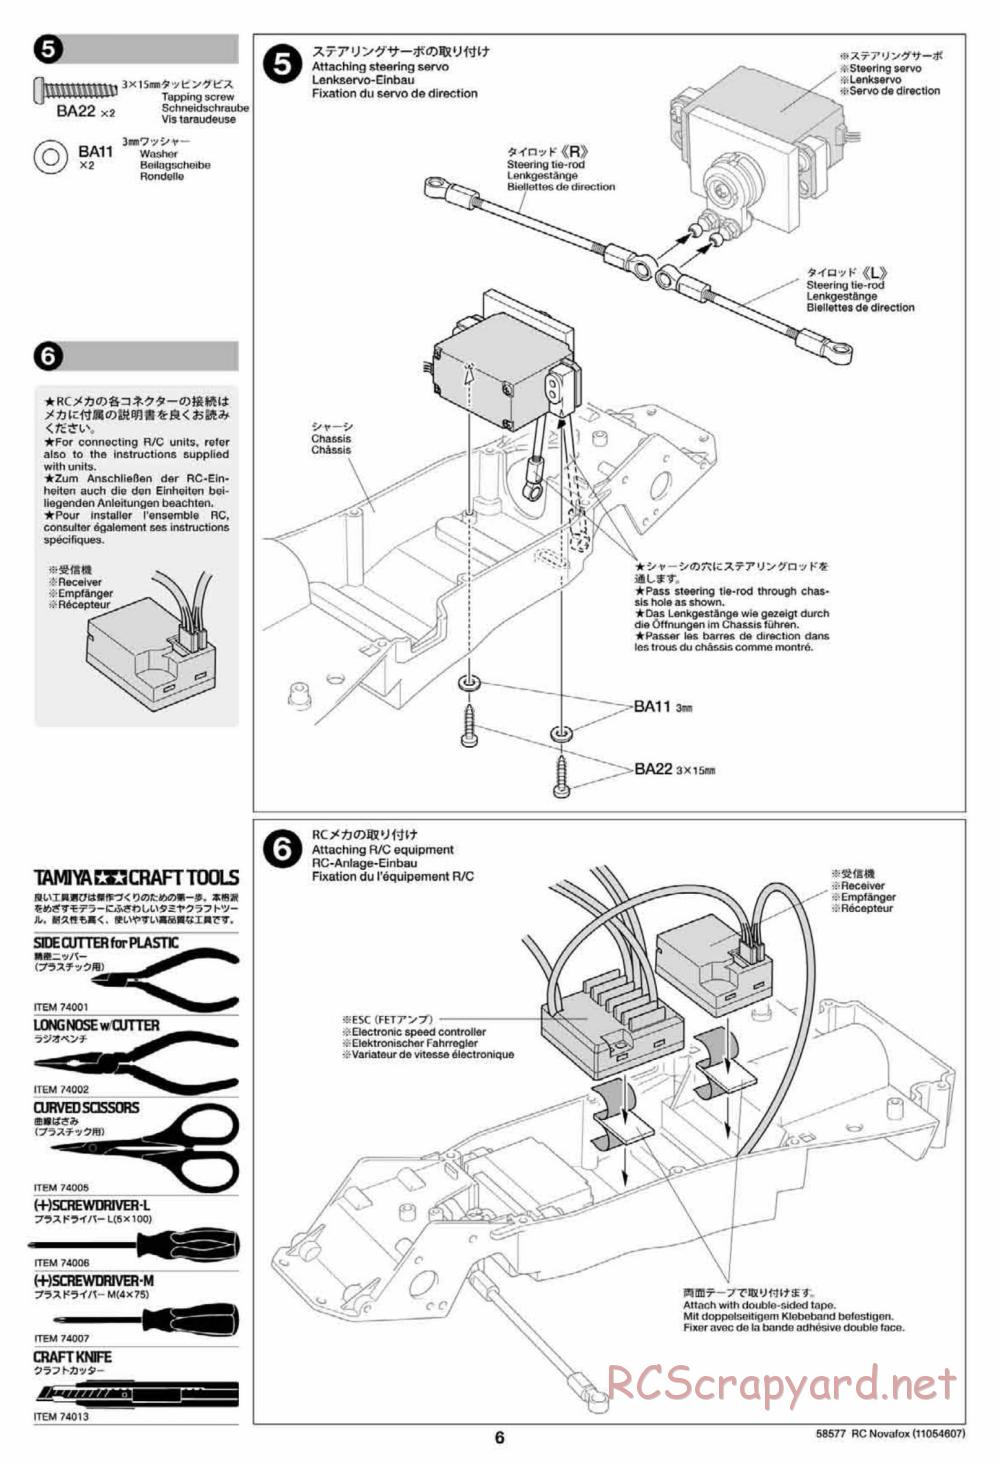 Tamiya - Novafox Chassis - Manual - Page 6